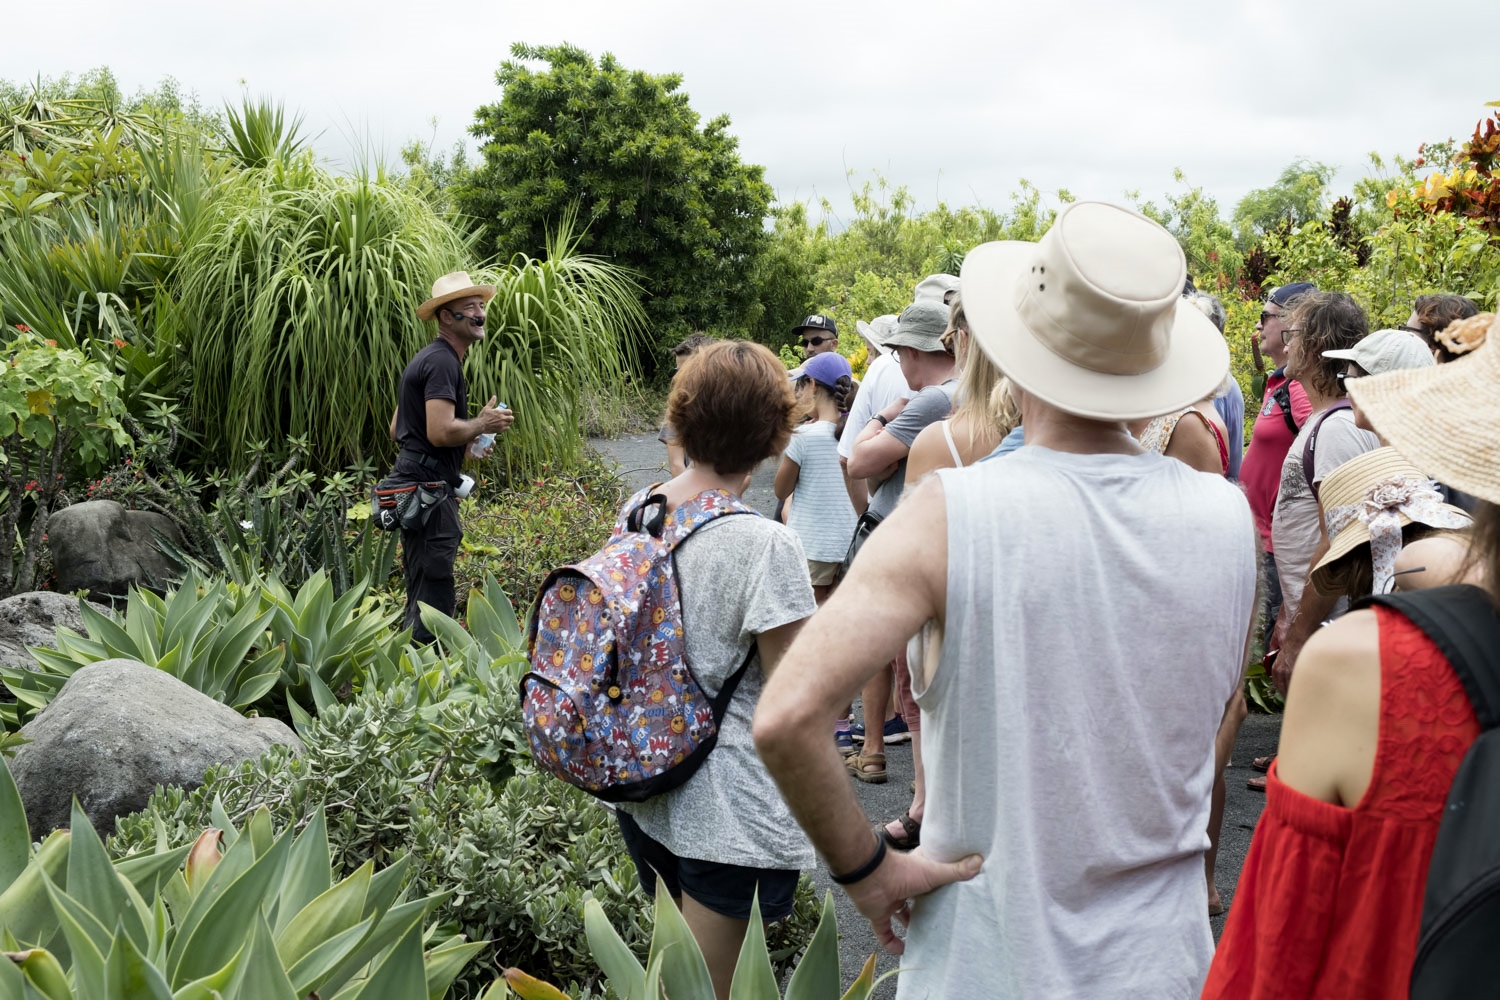 La visite dure 2 heures et les guides racontent l’histoire de leur île à travers les plantes. On commence avec les plantes contemporaines, pour revenir ensuite sur les cultures qui ont fait la valeur de l’île aux yeux des colons de l’époque : le café, la vanille et la canne à sucre.